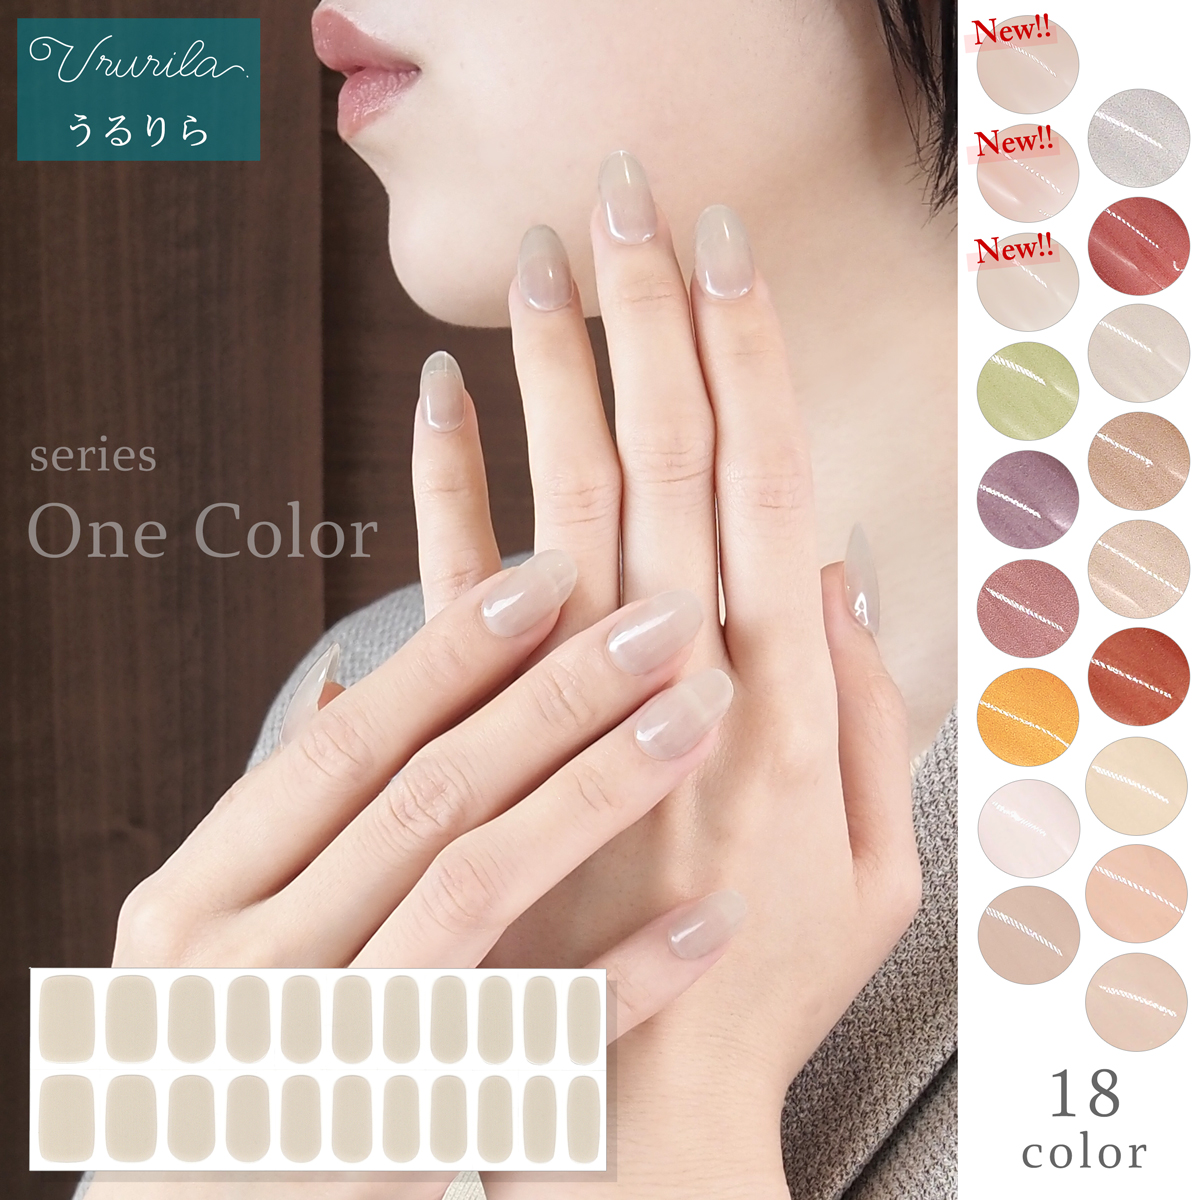  гель наклейки на ногти лечение лечение модель прикленить только one цвет одиночный цвет серии! наклейки на ногти .... официальный [nu1608]